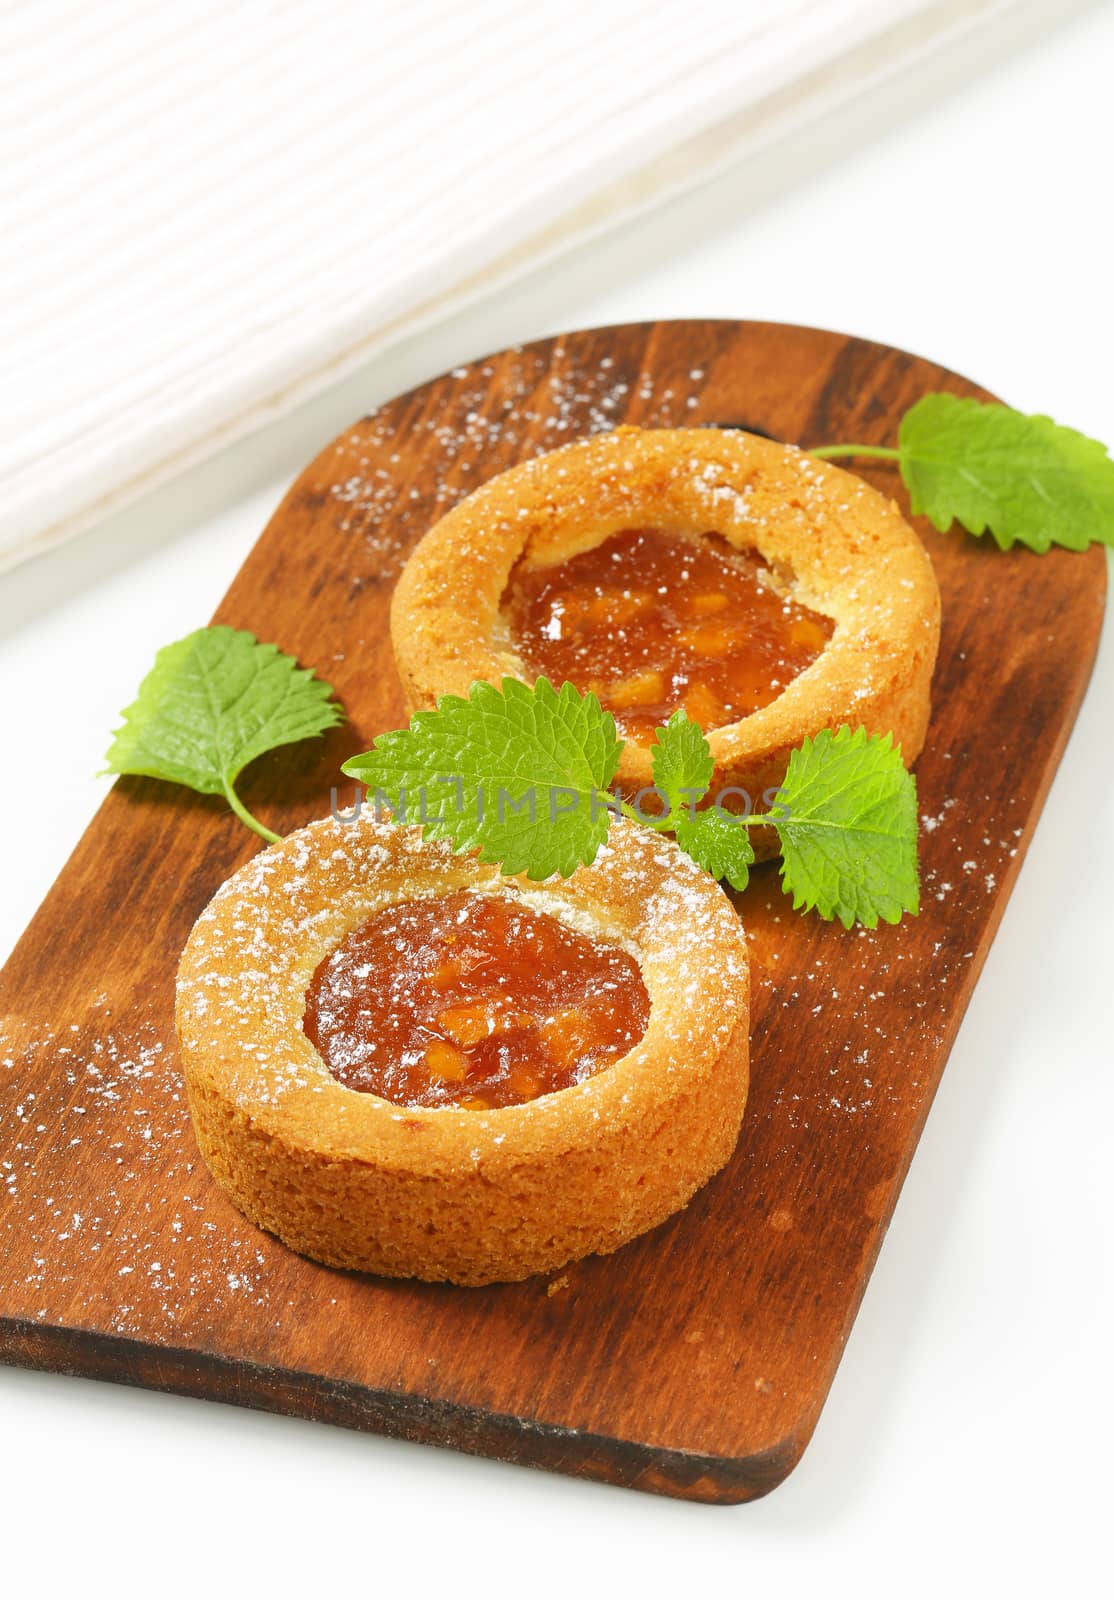 Mini apple tarts by Digifoodstock